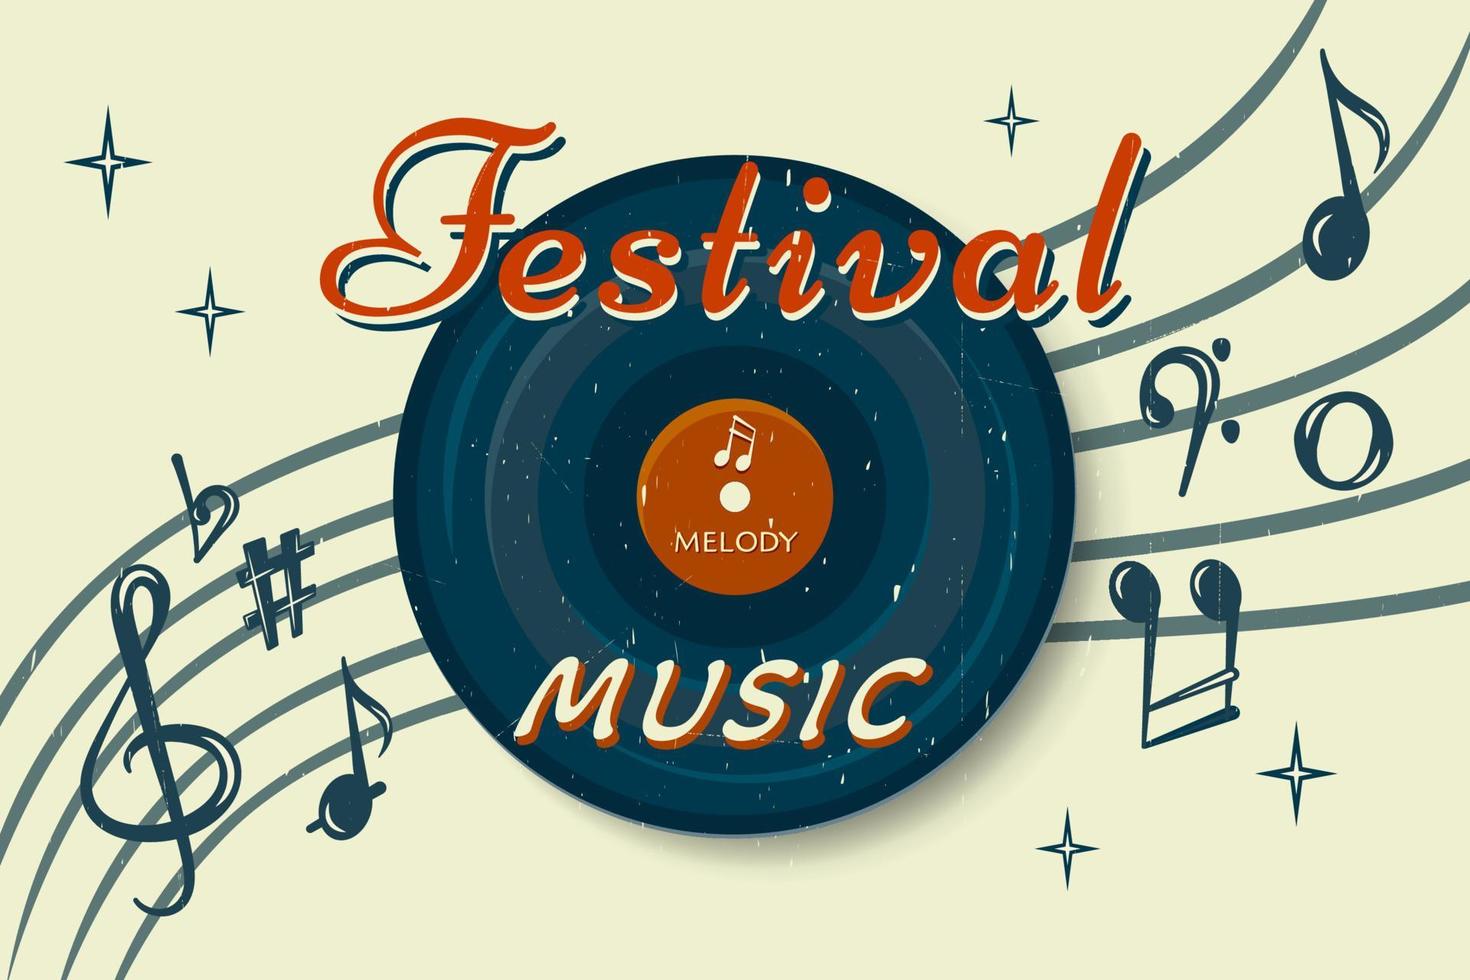 musik festival baner. klassisk musik bakgrund med anteckningar, musik plattor och text för flygblad, affisch, konsert, fest design. vektor illustration.